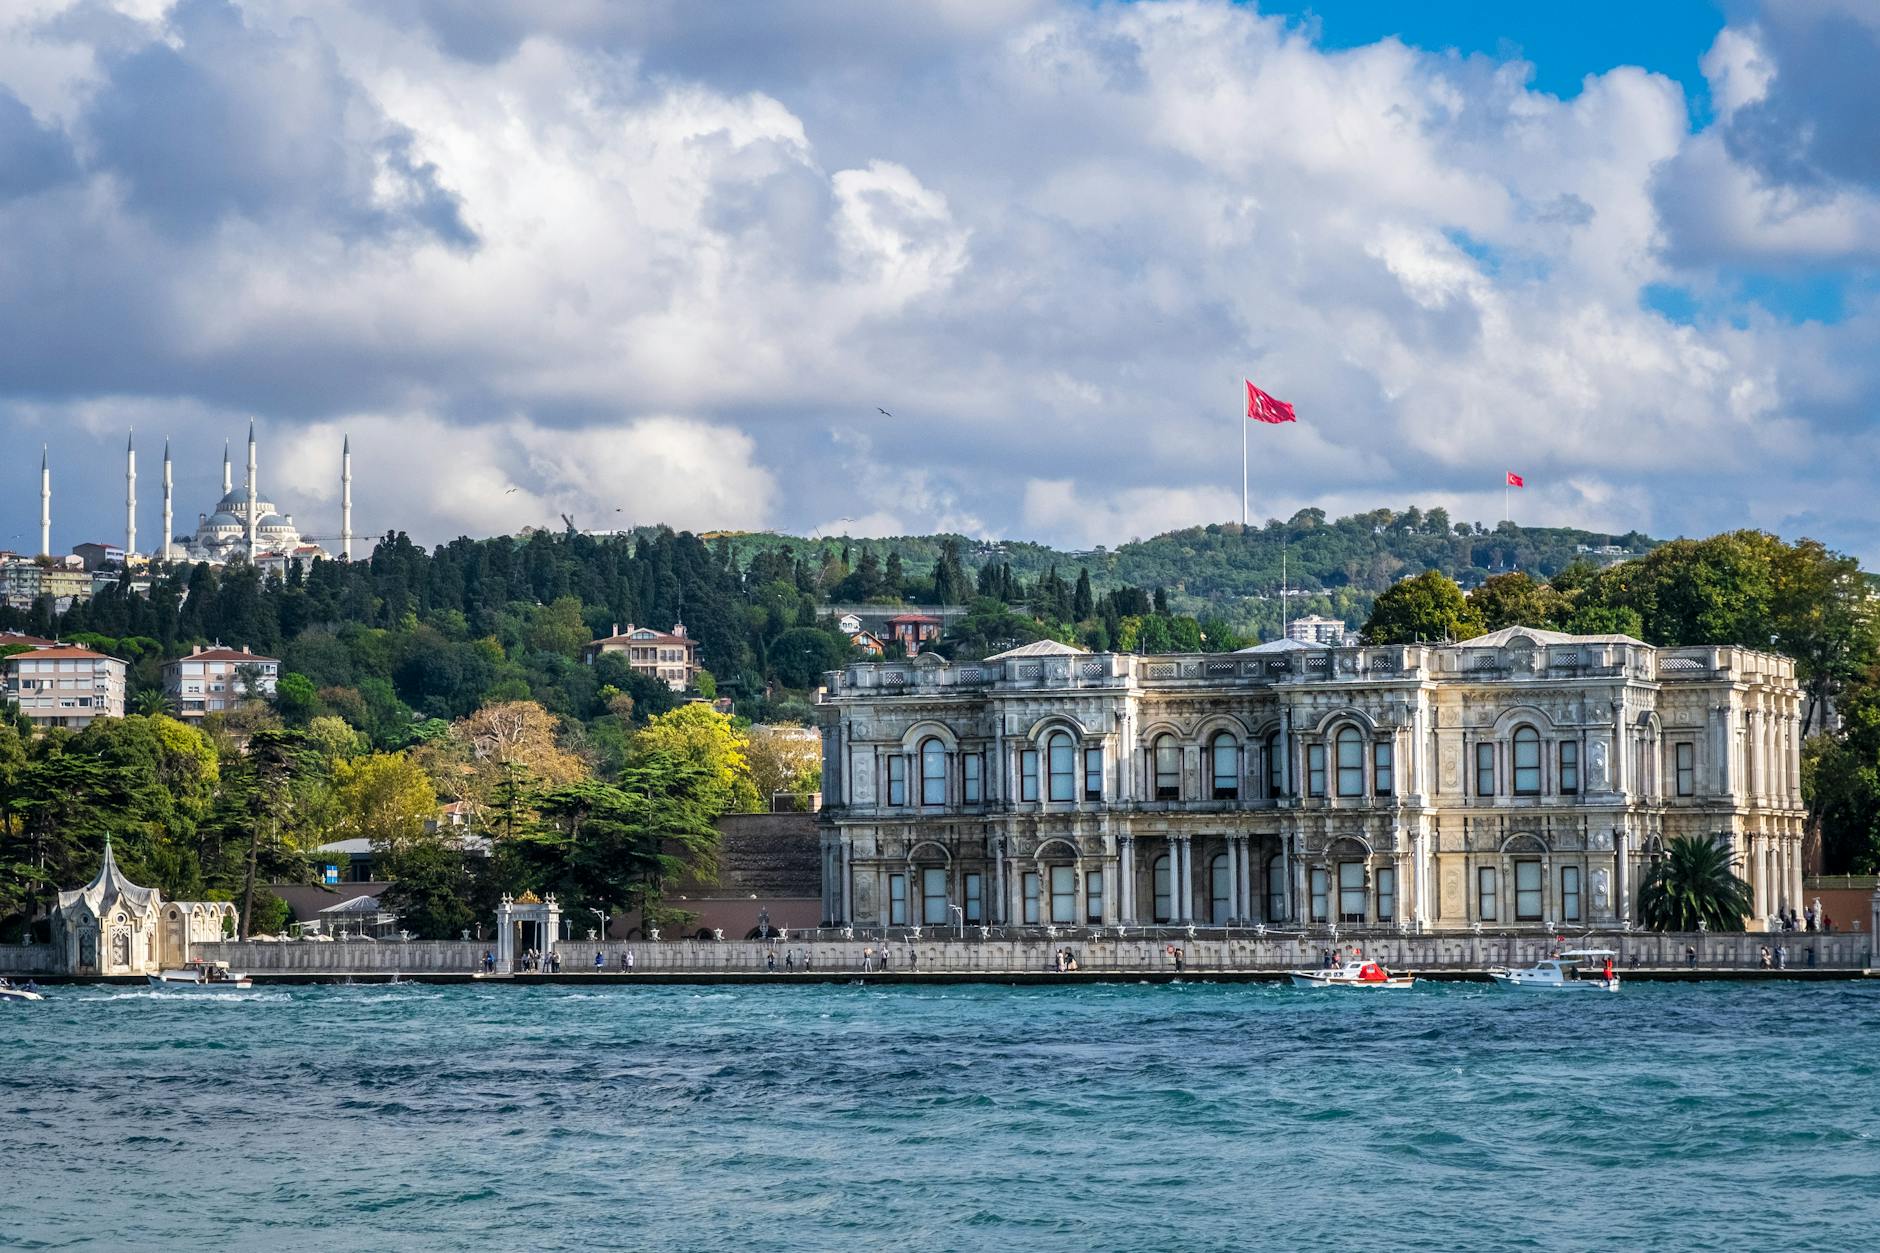 beylerbeyi palace in istanbul